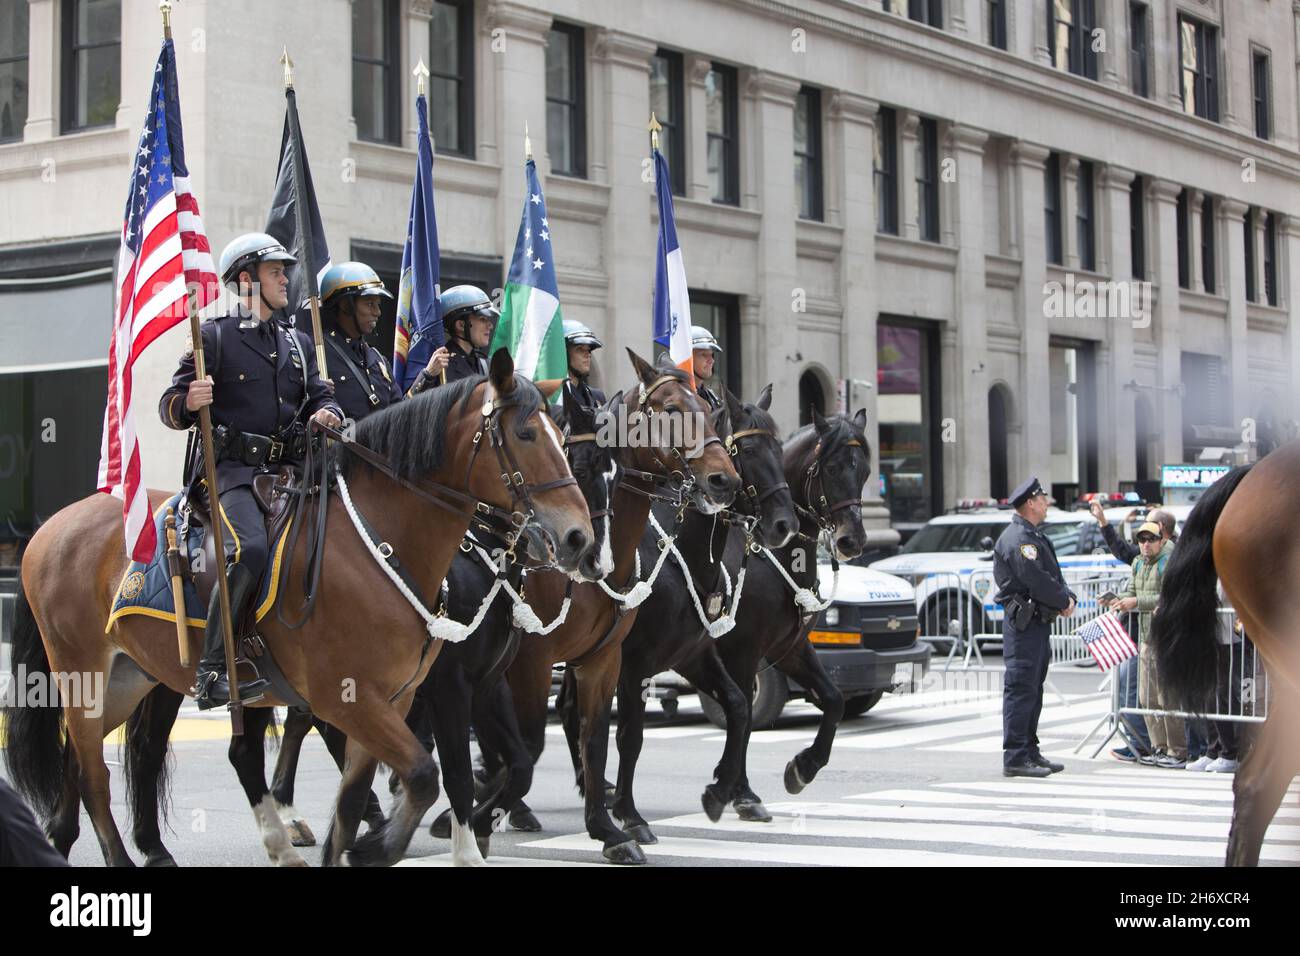 2021 Veterans Day Parade lungo la 5th Avenue. New York City ospita la più grande Veterans Day Parade del paese. Gli ufficiali di NYPD a cavallo conducono il parde su l'Avenue. Foto Stock